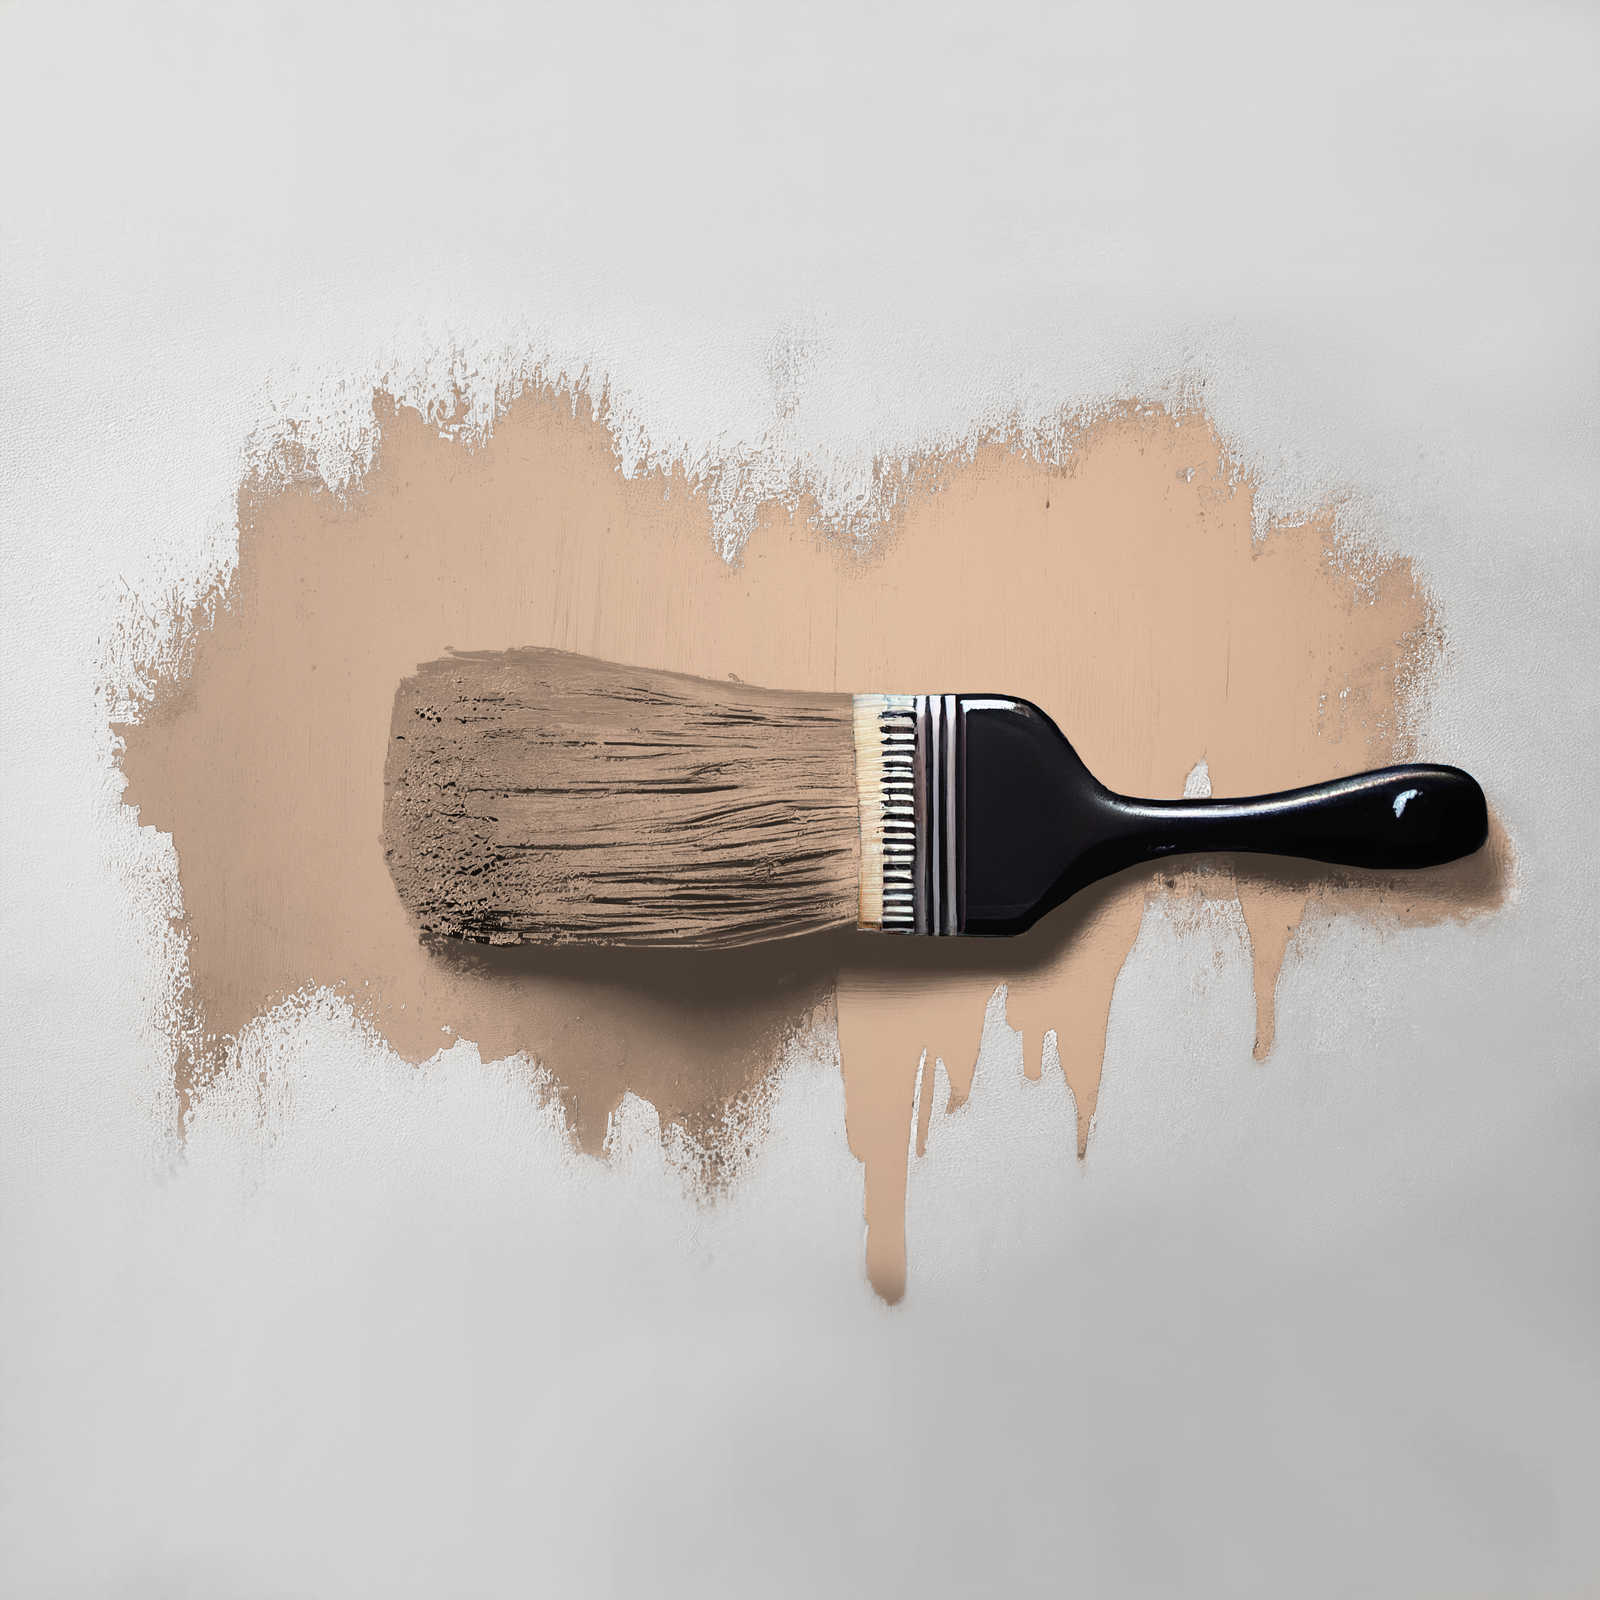             Wall Paint TCK6021 »Lovely Lentil« in warm beige – 2.5 litre
        